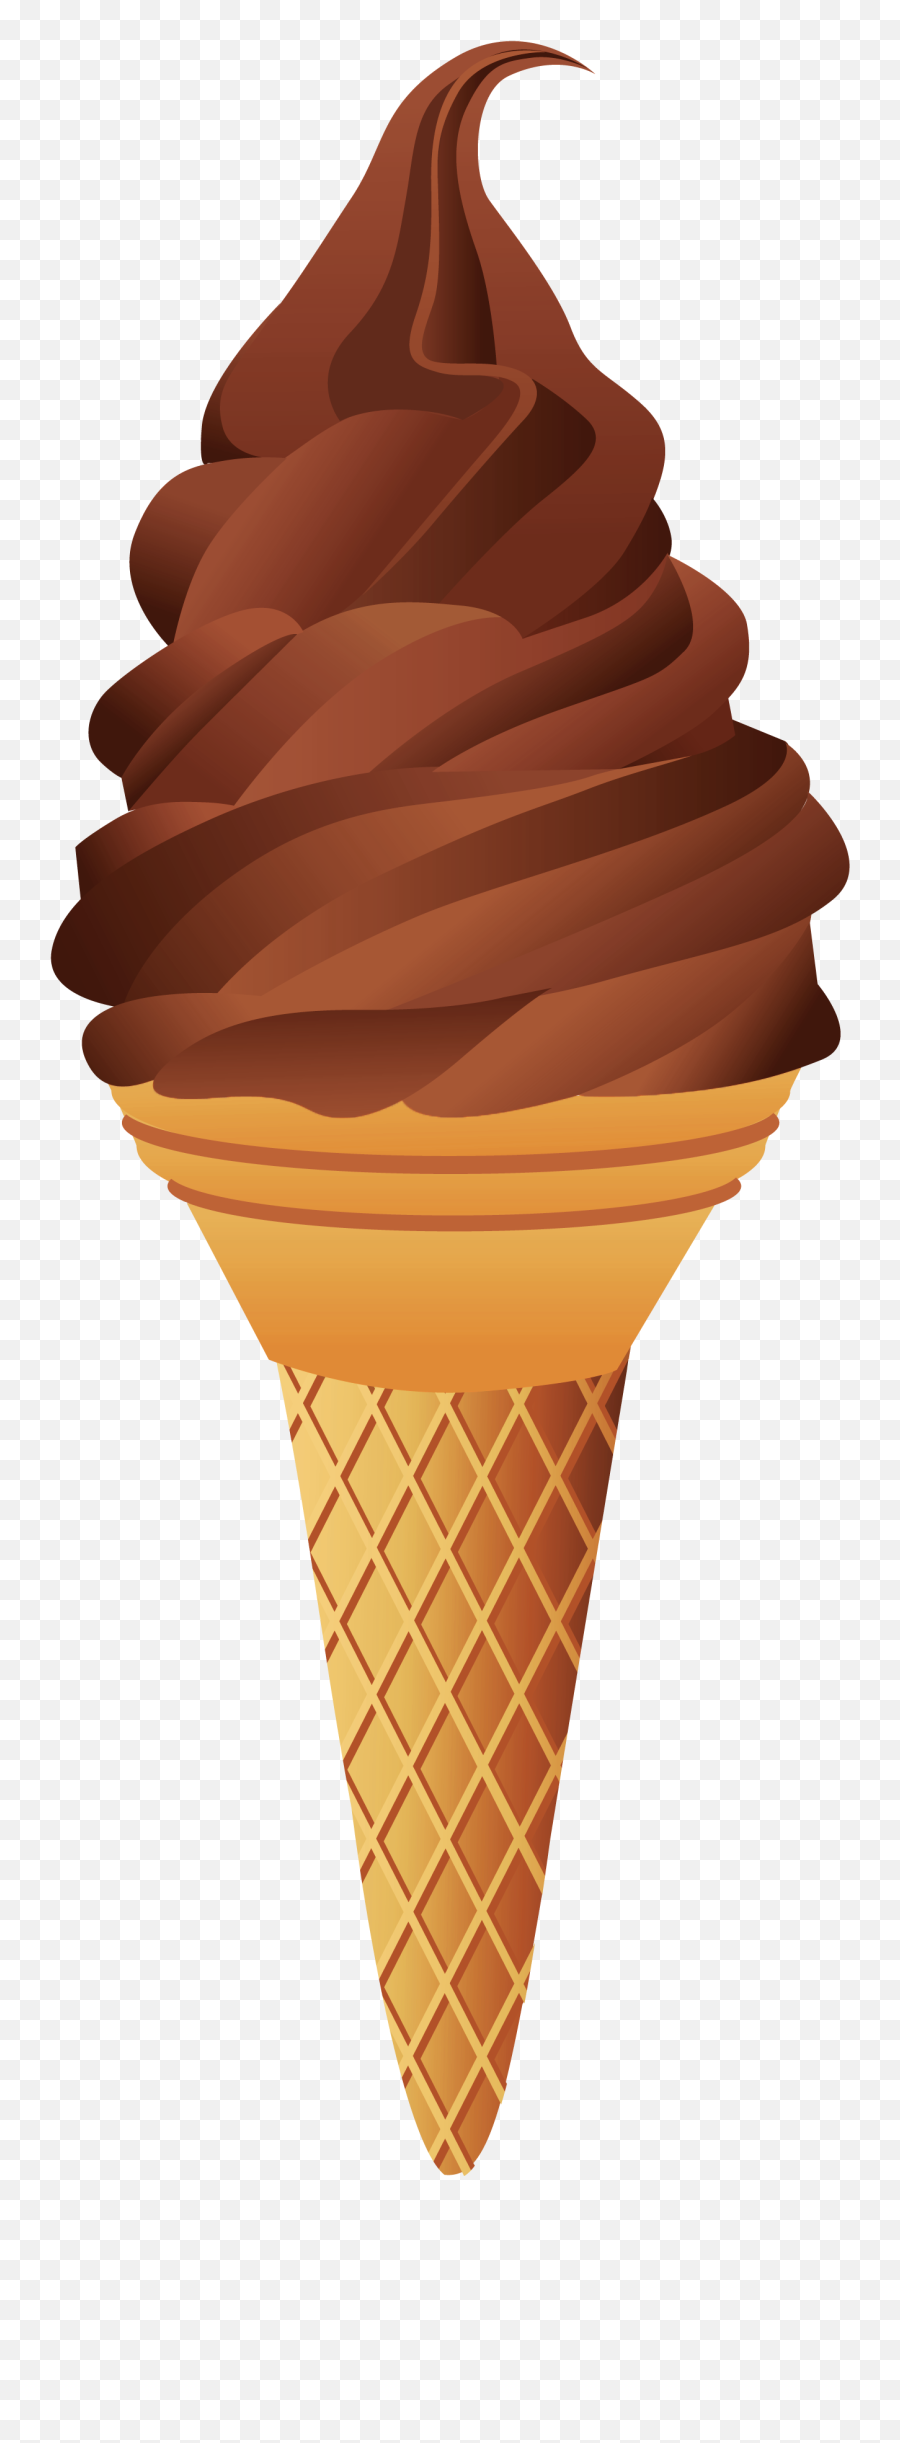 Chocolate Ice Cream Ice Cream Cone Sundae - Ice Cream Png Chocolate Ice Cream Transparent Background Emoji,Icecream Sundae Clipart